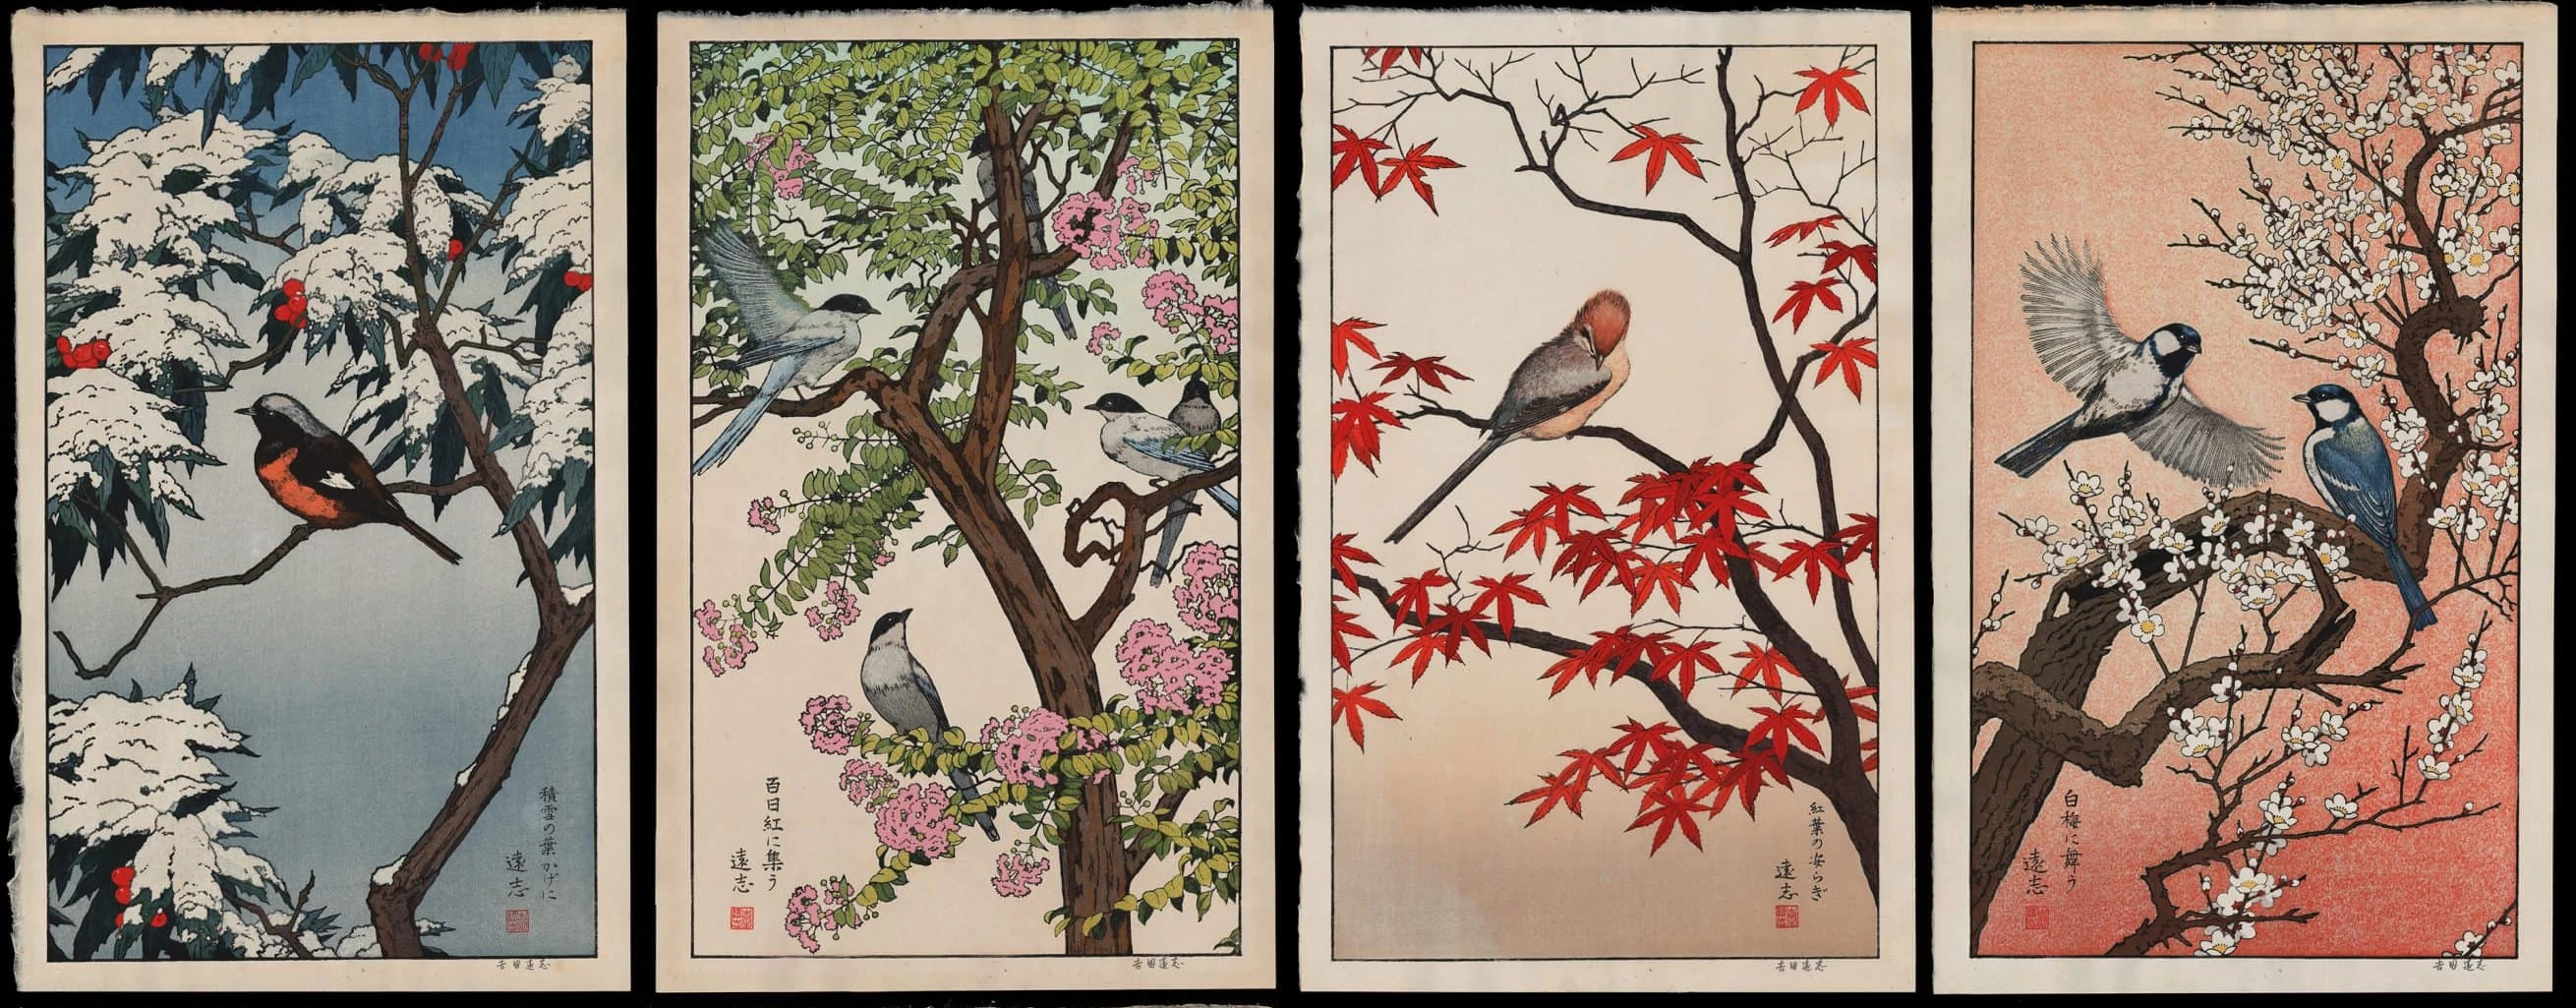 ../../_images/toshi-yoshida-birds-of-the-seasons-set-of-four-horizontal.webp